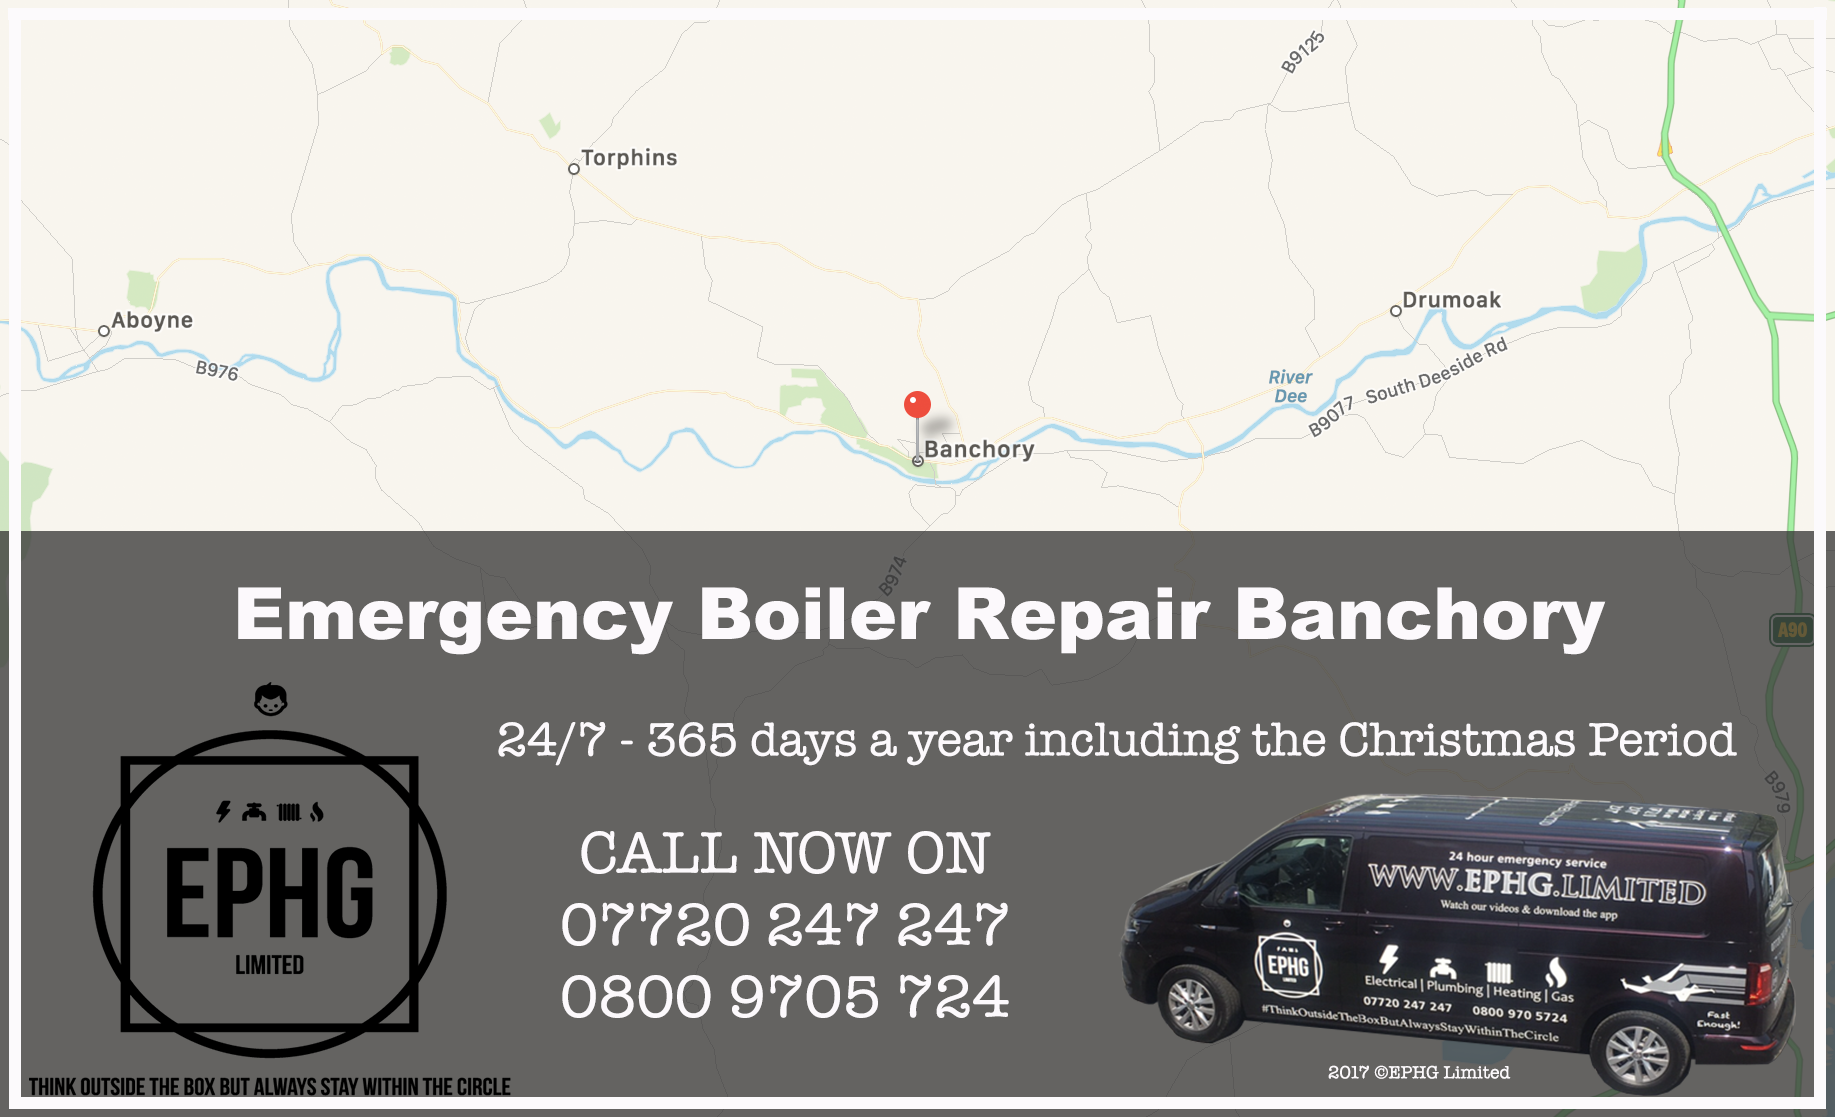 24 Hour Emergency Boiler Repair Banchory